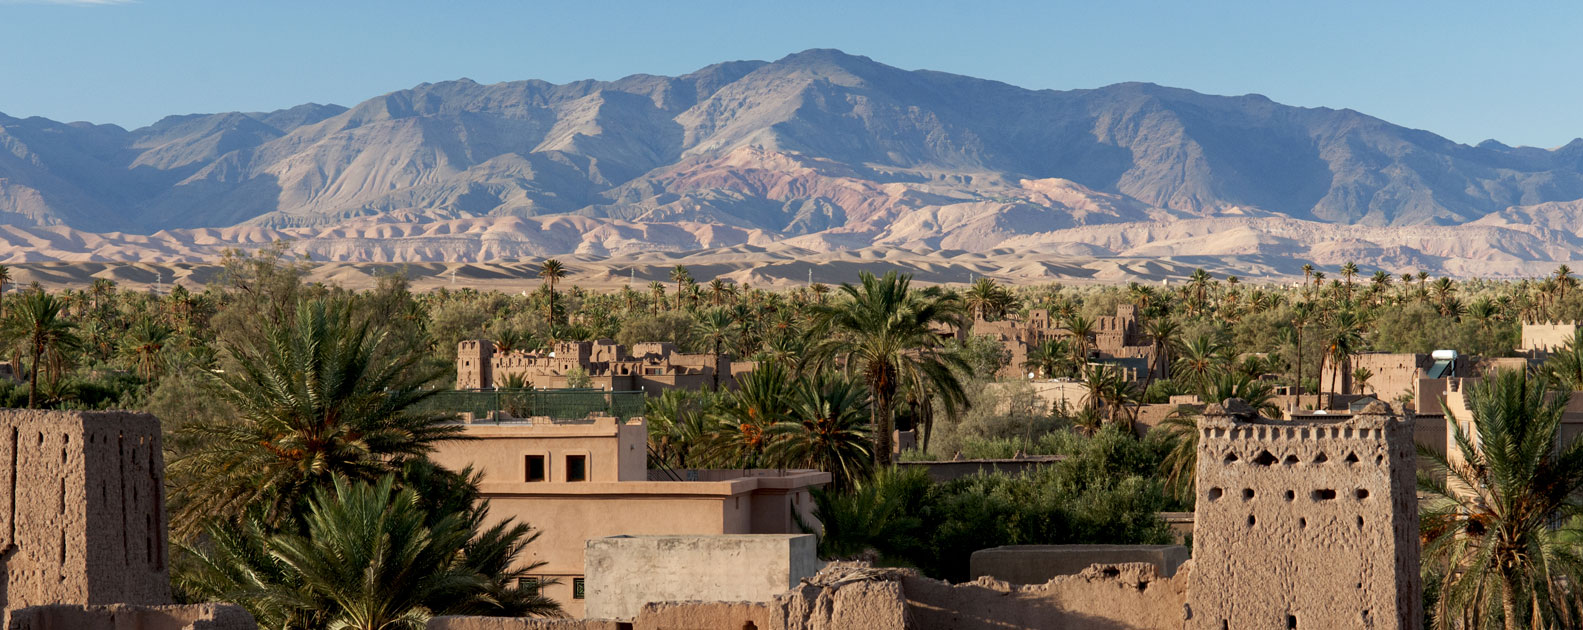 Ouarzazate-Zagoura-Tinghir, Un set cinematografico da non perdere